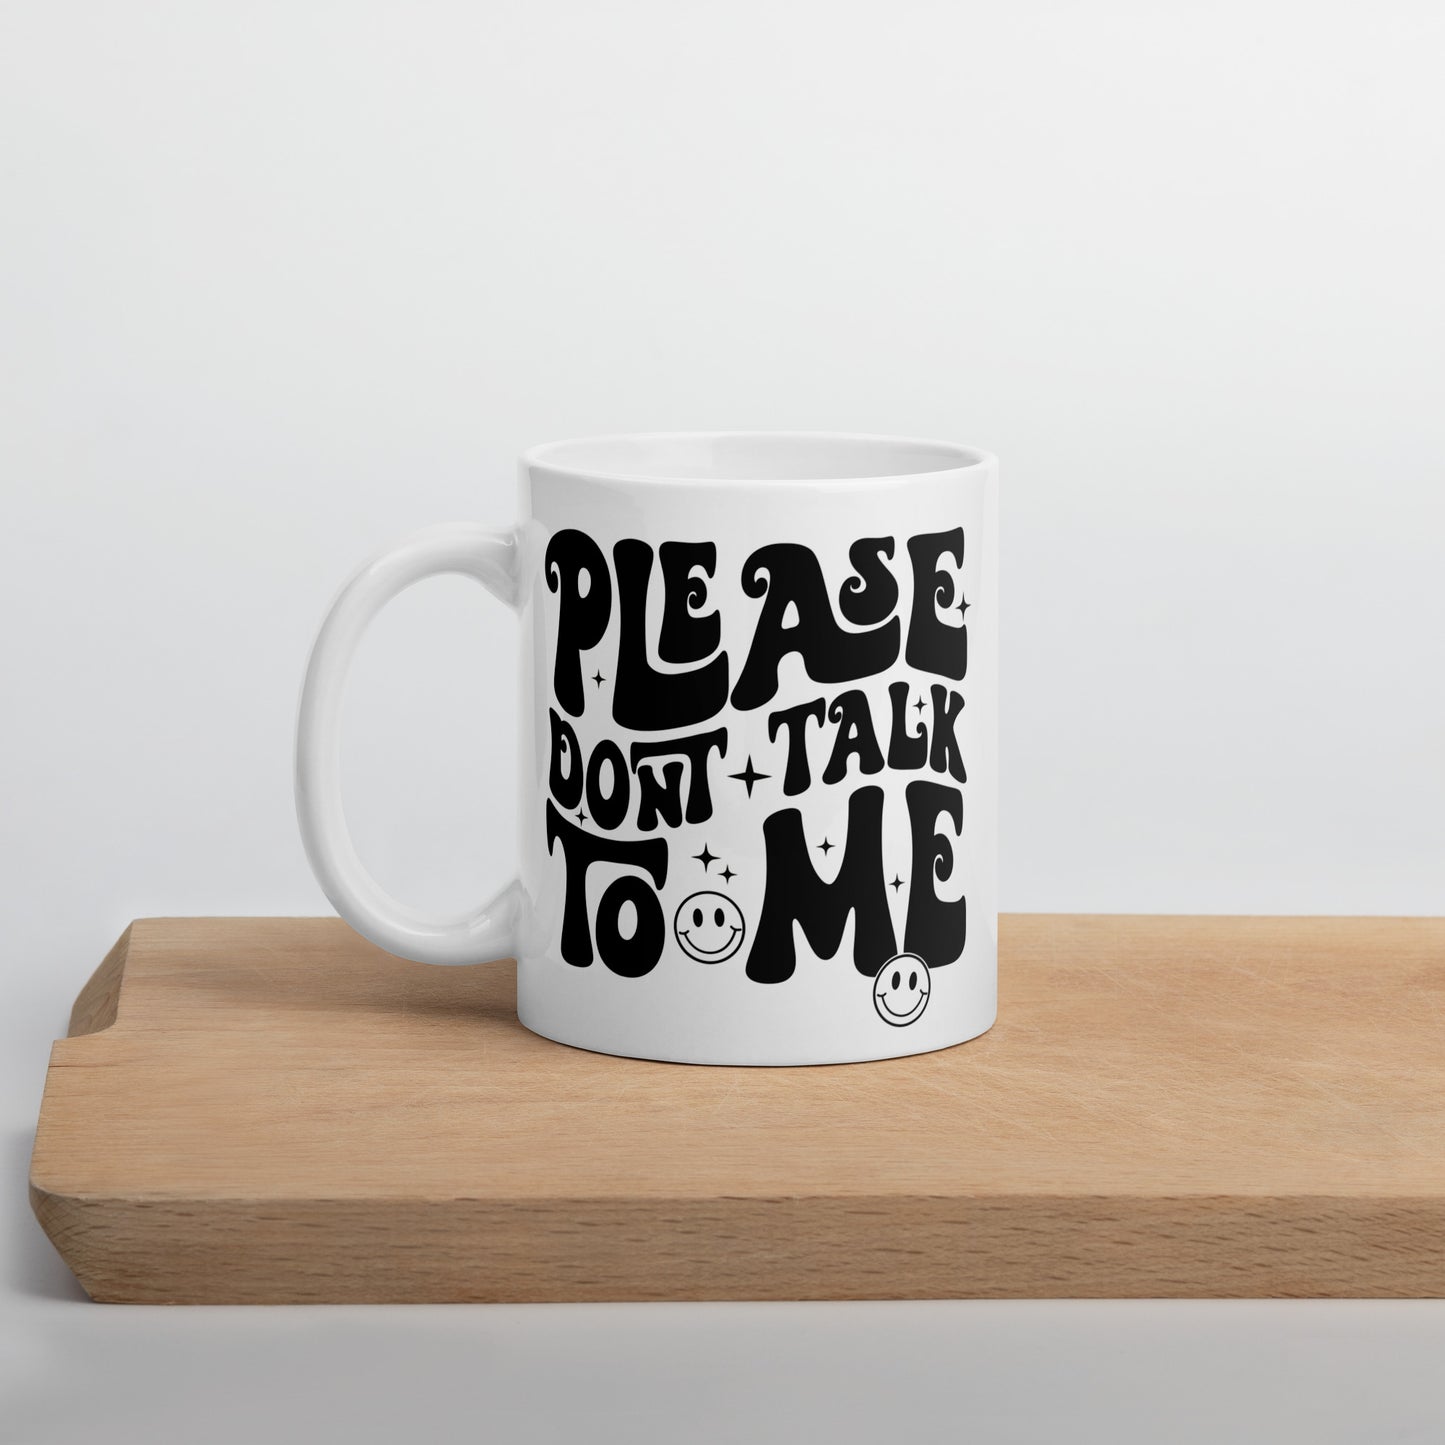 Don't Talk to Me mug